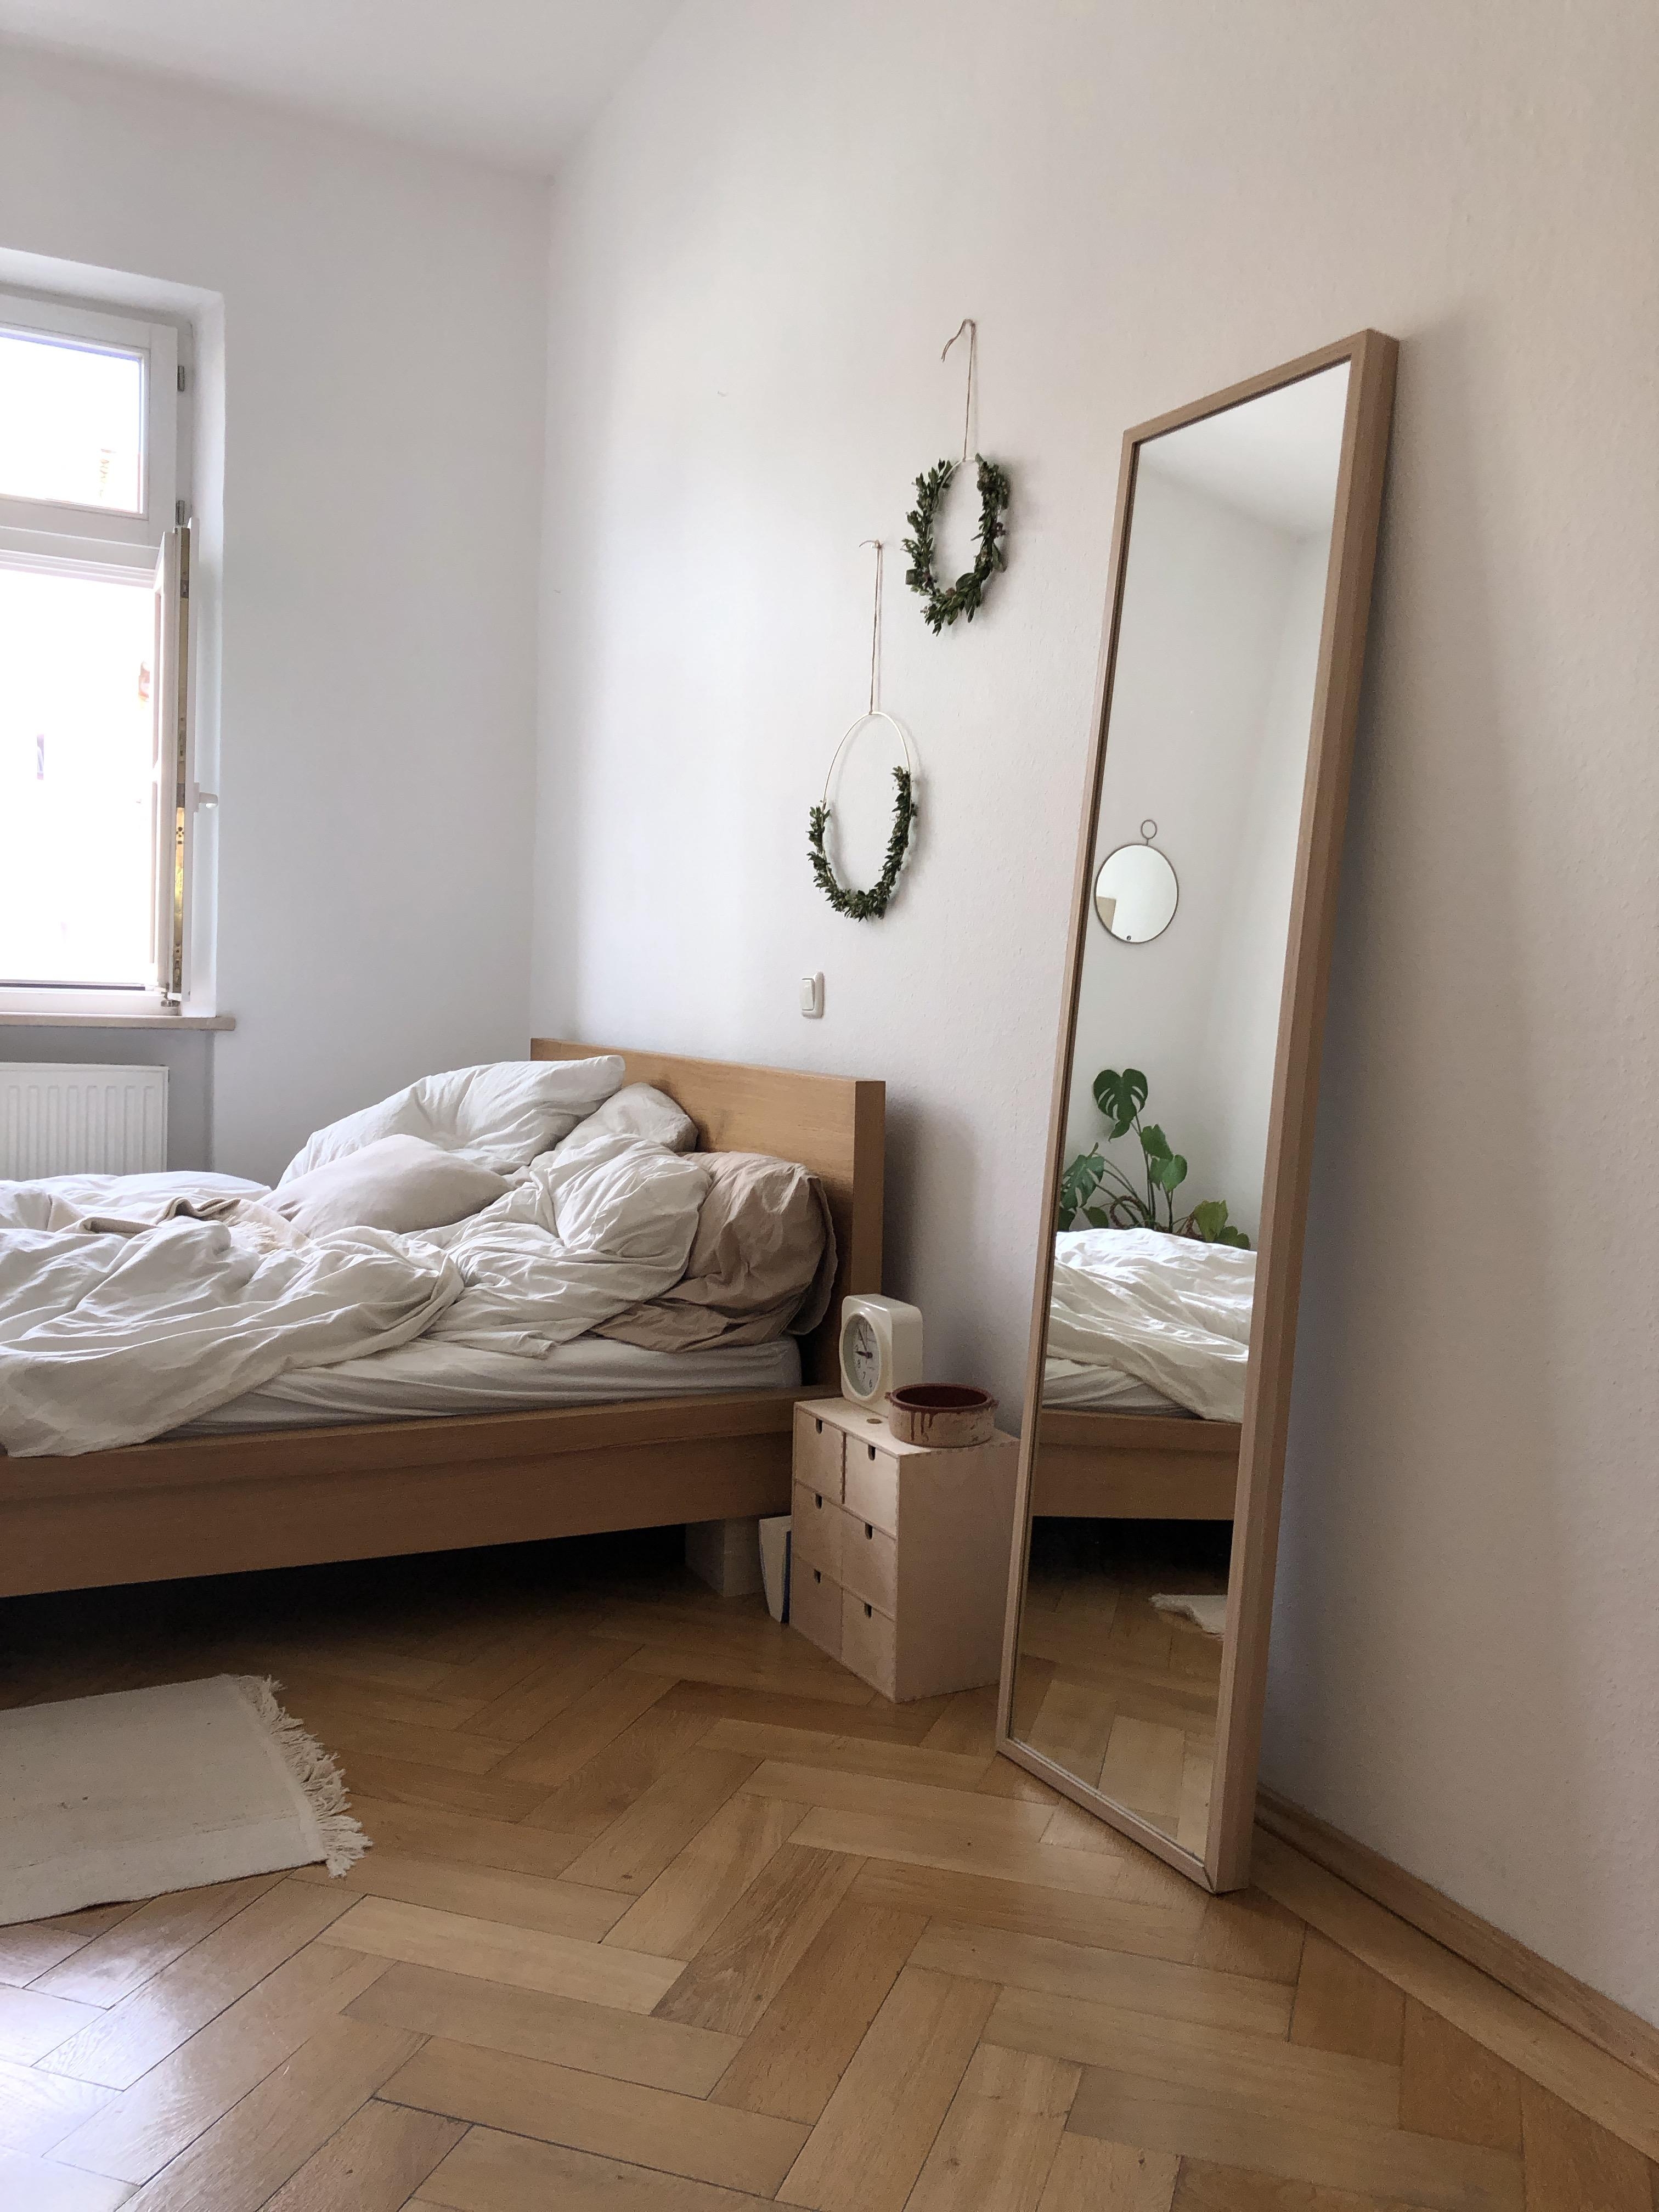 Ein Blick ins #schlafzimmer. #cozy #bett #blumenkranz